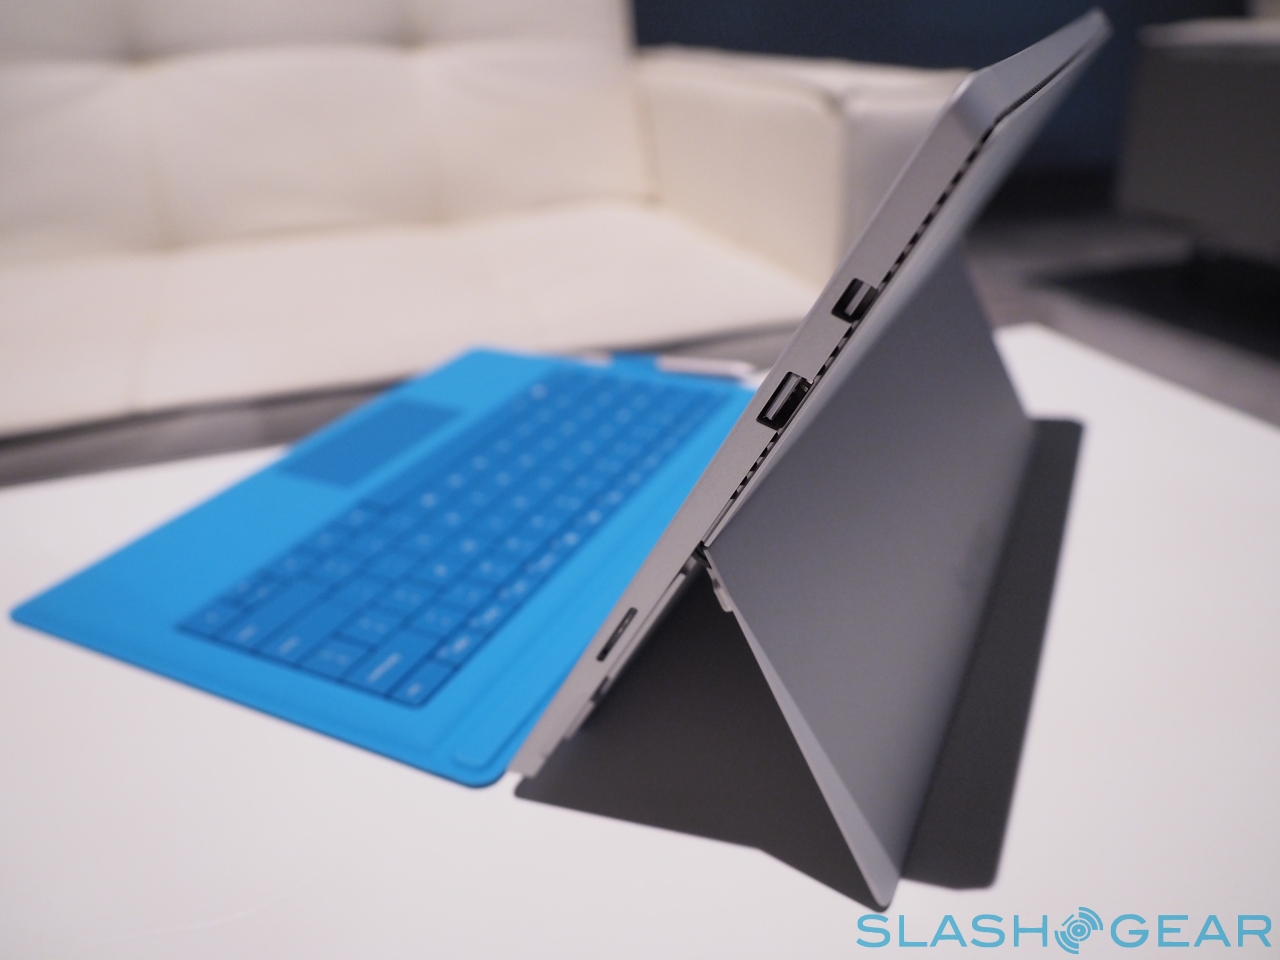 Surface Pro Hands On Slashgear